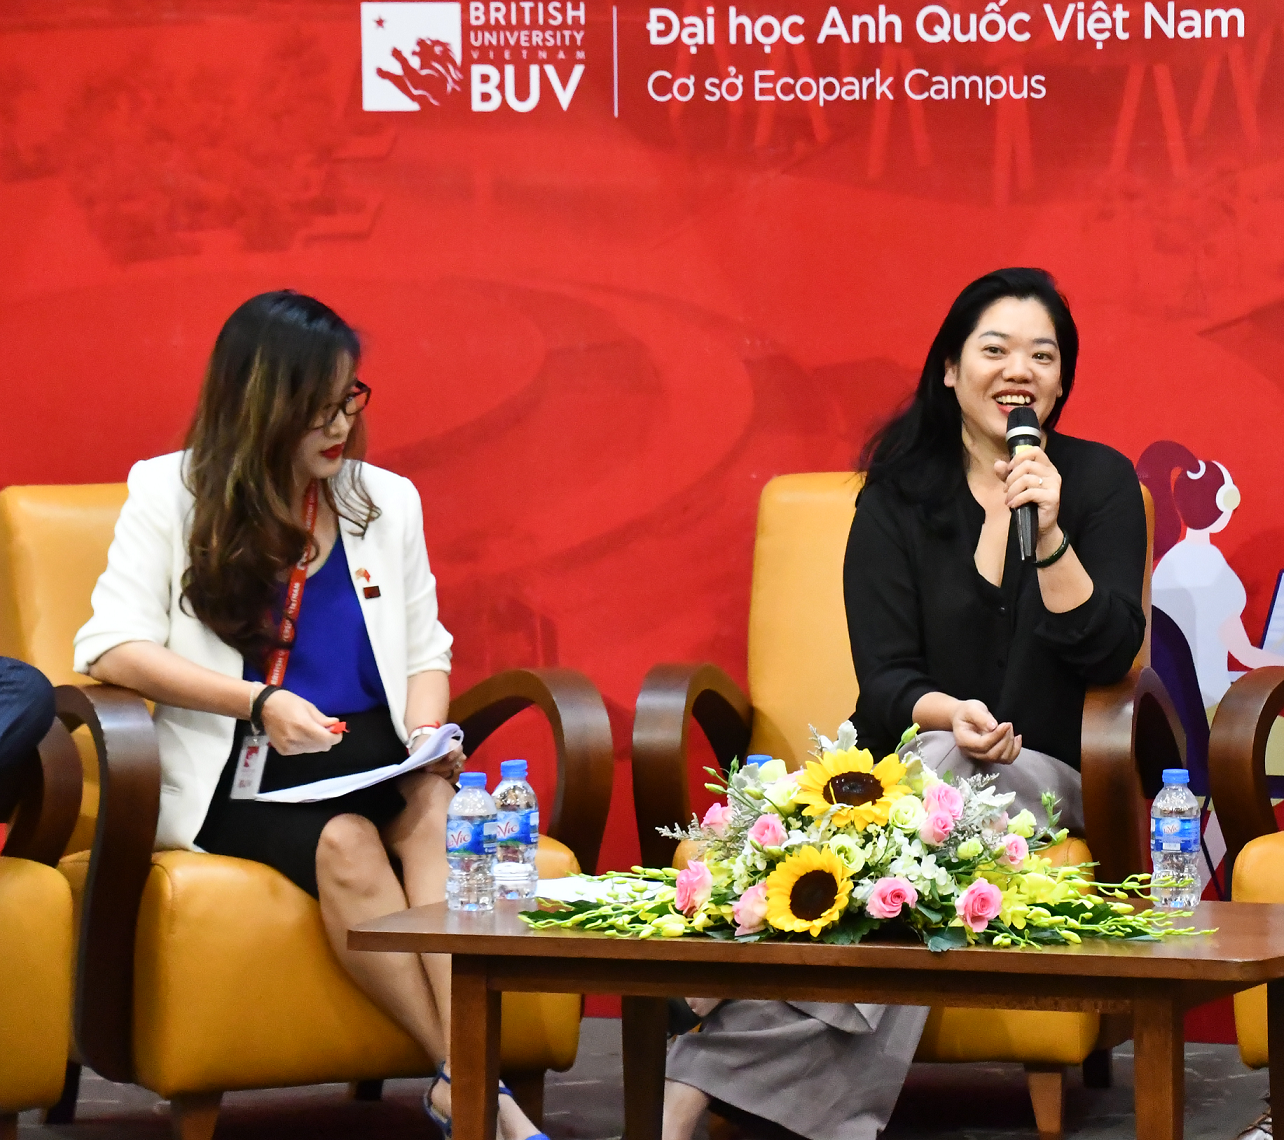 Học sinh Việt Nam còn thiếu chính kiến trong định hướng ngành học và nghề nghiệp - Ảnh 3.